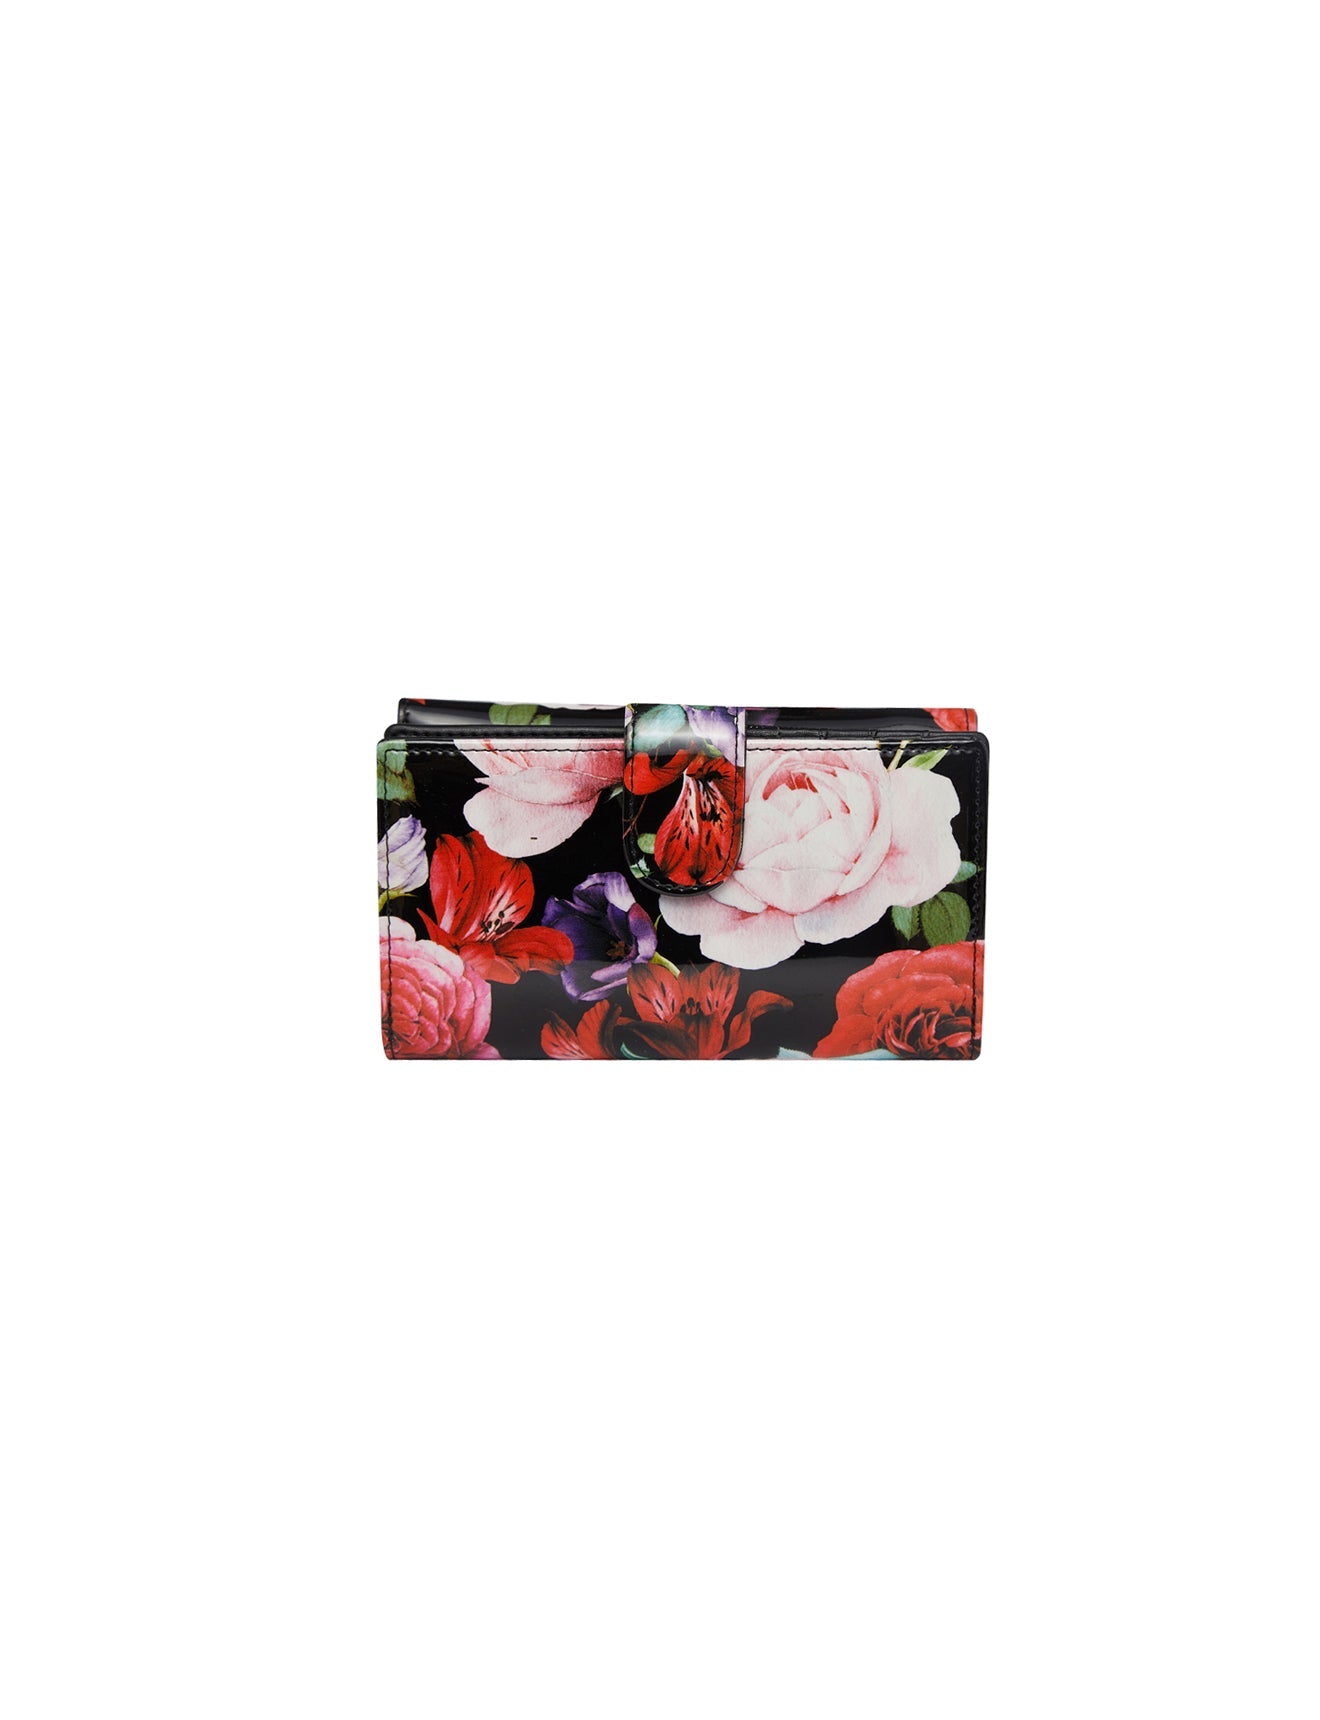 Serenade - Scarlett WSN-4202 Leather Wallet - Medium - 0